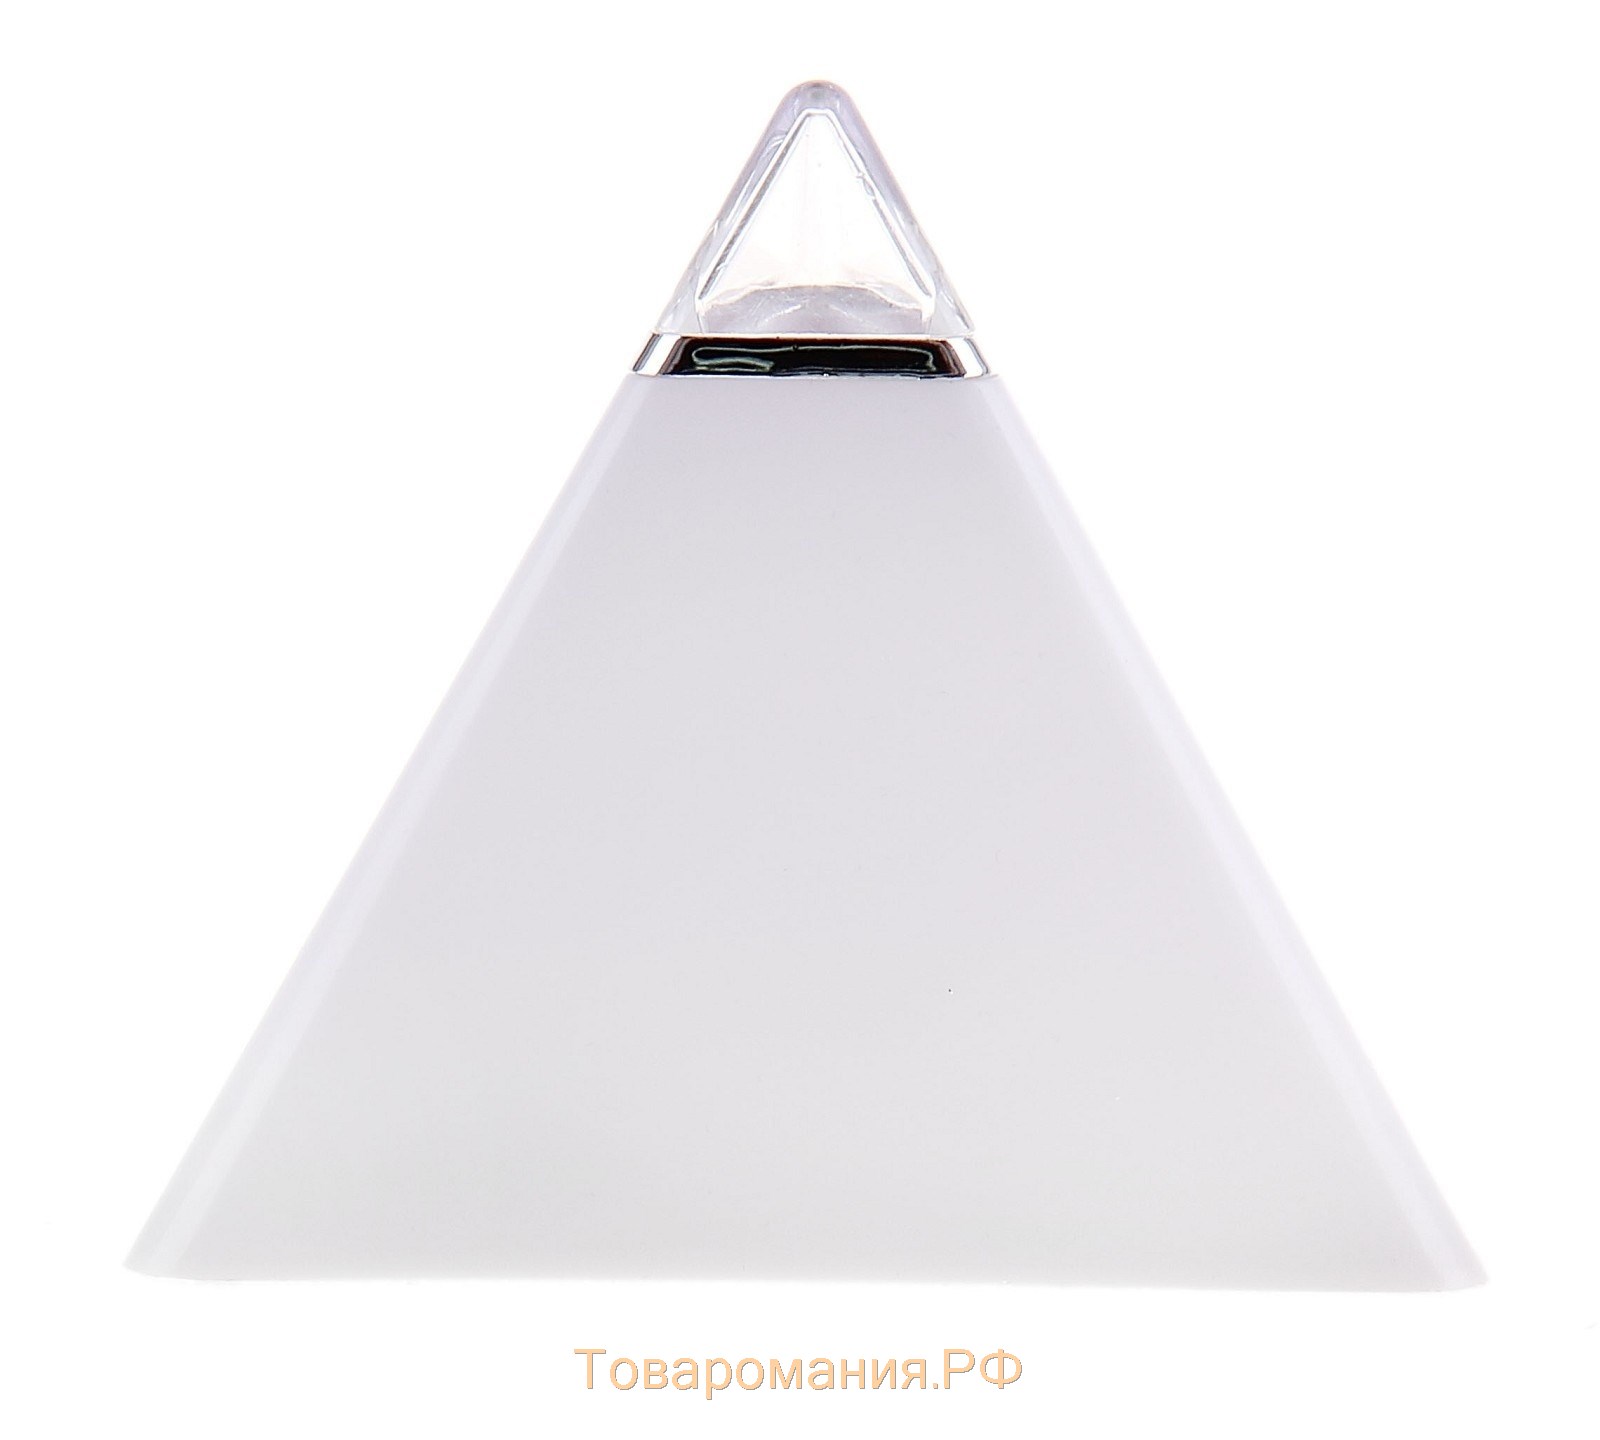 Будильник LB-05 "Пирамида", 7 цветов дисплея, термометр, подсветка